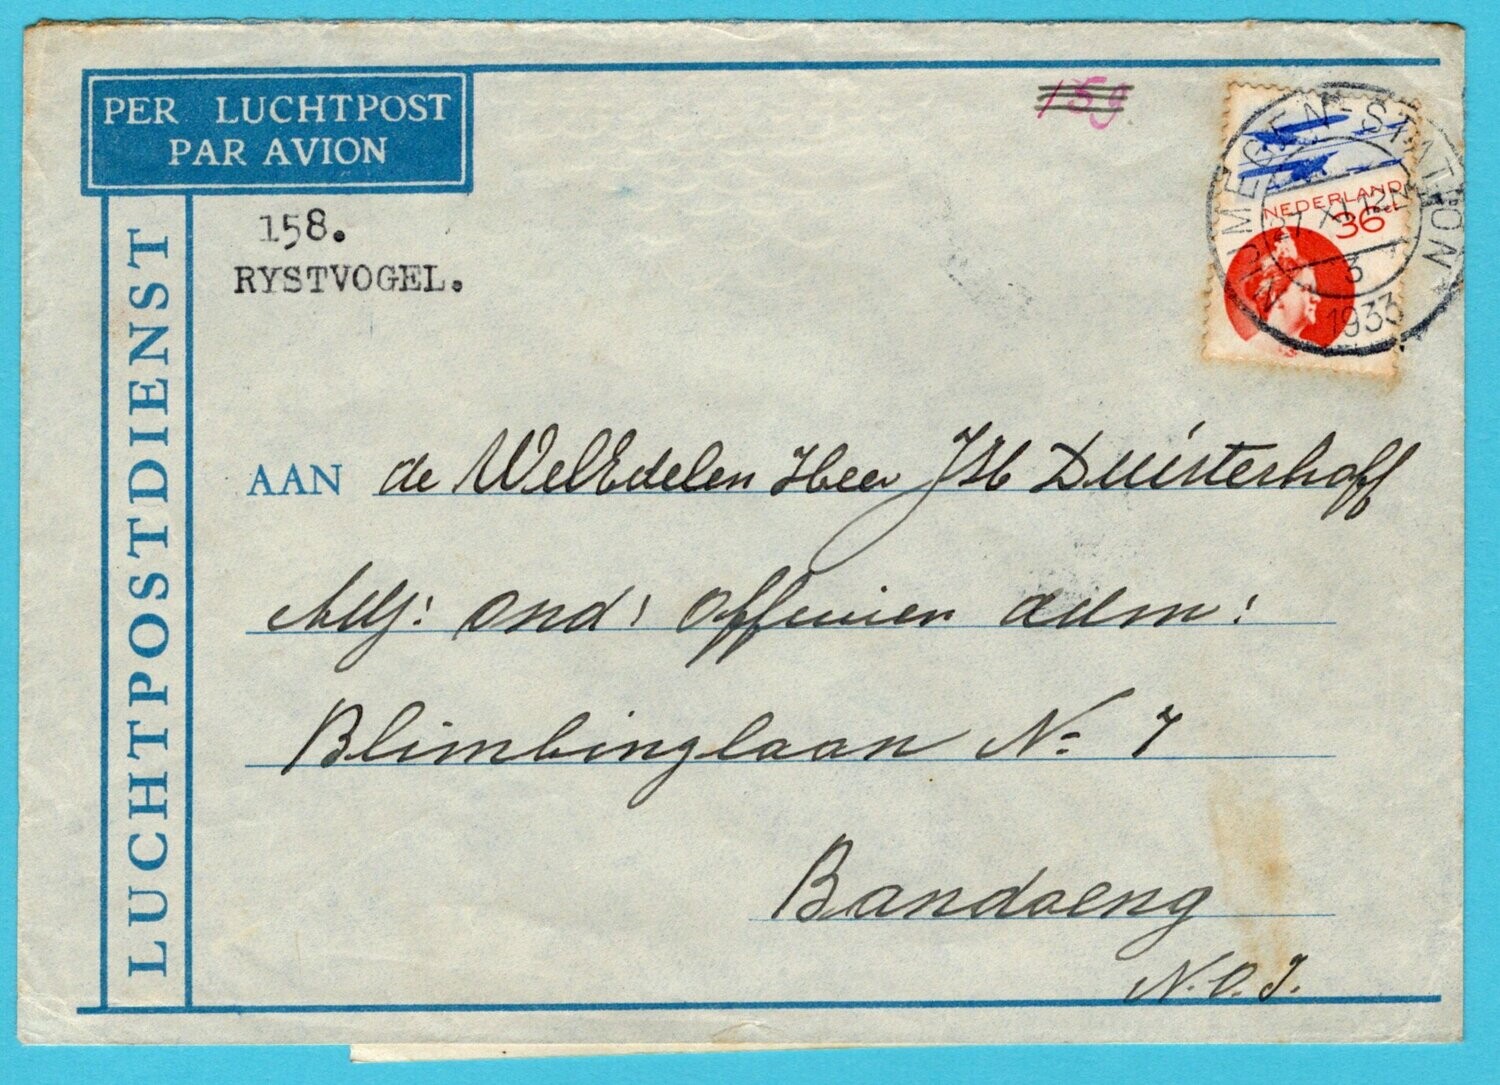 NEDERLAND luchtpost brief 1933 Nijmegen met postkantoor notitie